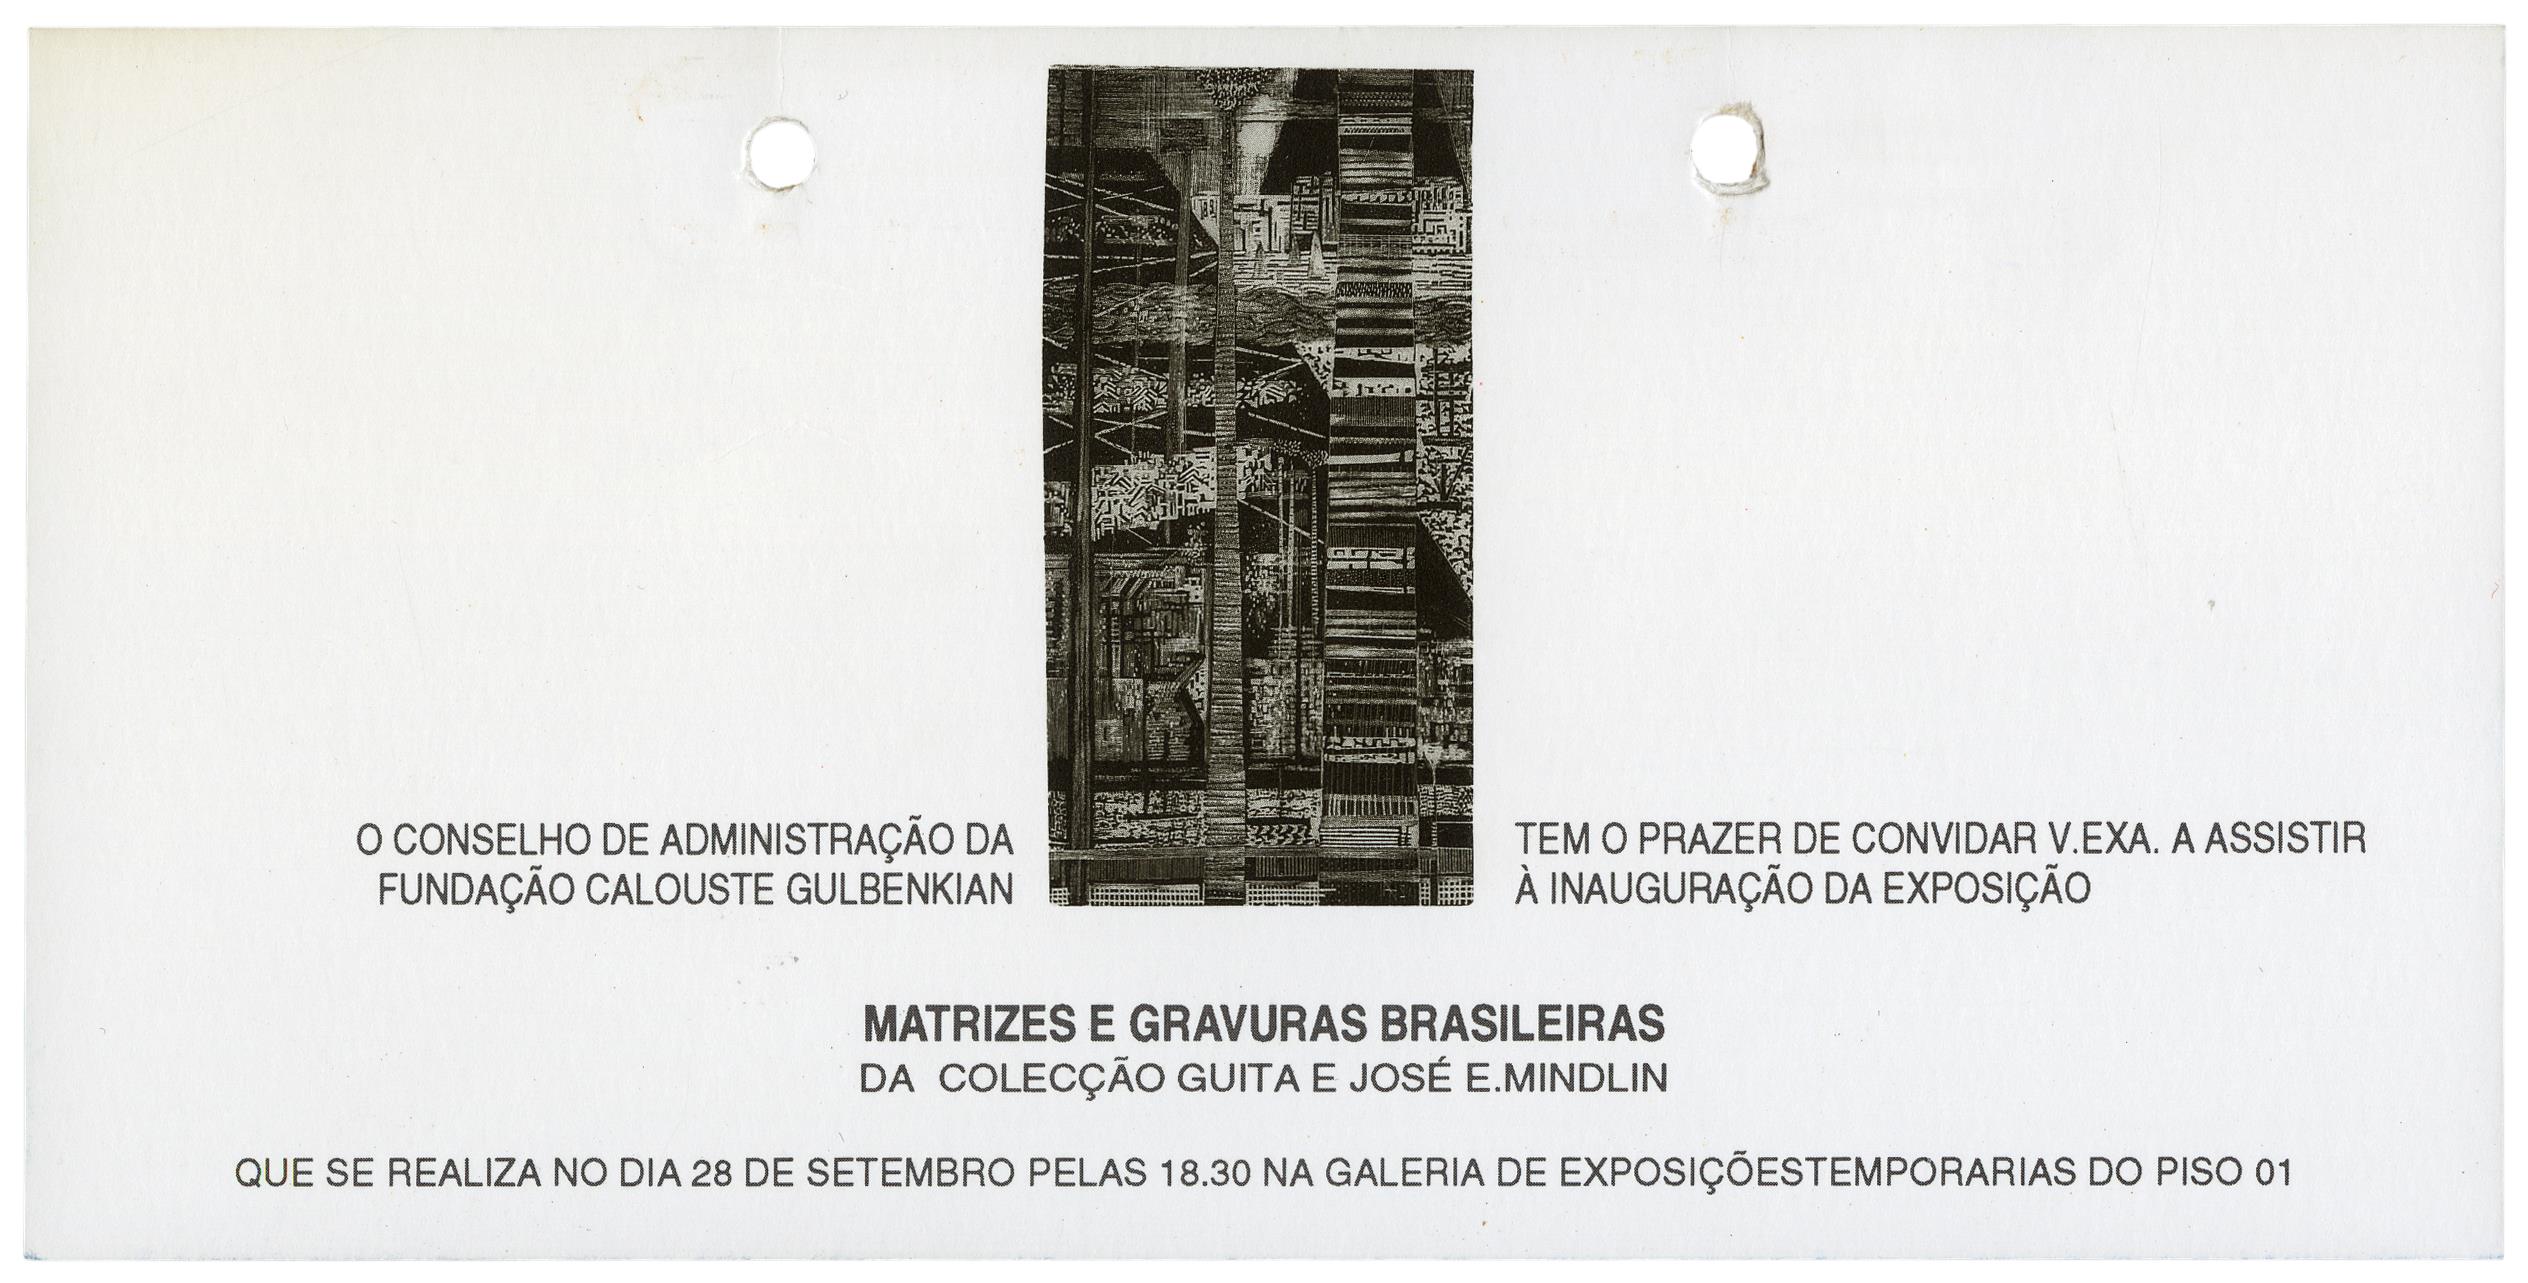 Matrizes e Gravuras Brasileiras da Colecção Guita e José E. Mindlin